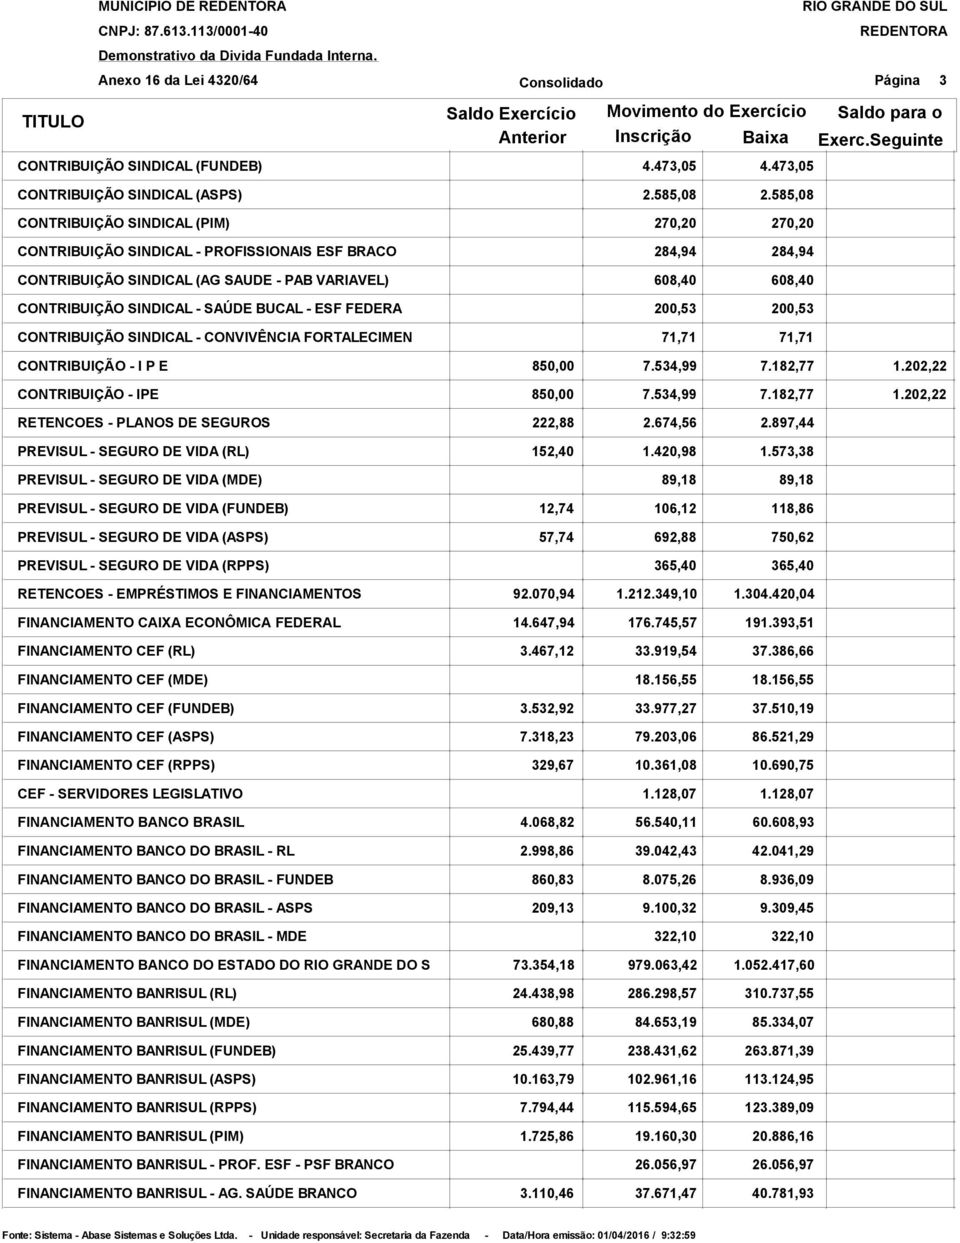 ESF FEDERA CONTRIBUIÇÃO SINDICAL - CONVIVÊNCIA FORTALECIMEN 2.585,08 270,20 284,94 608,40 200,53 71,71 2.